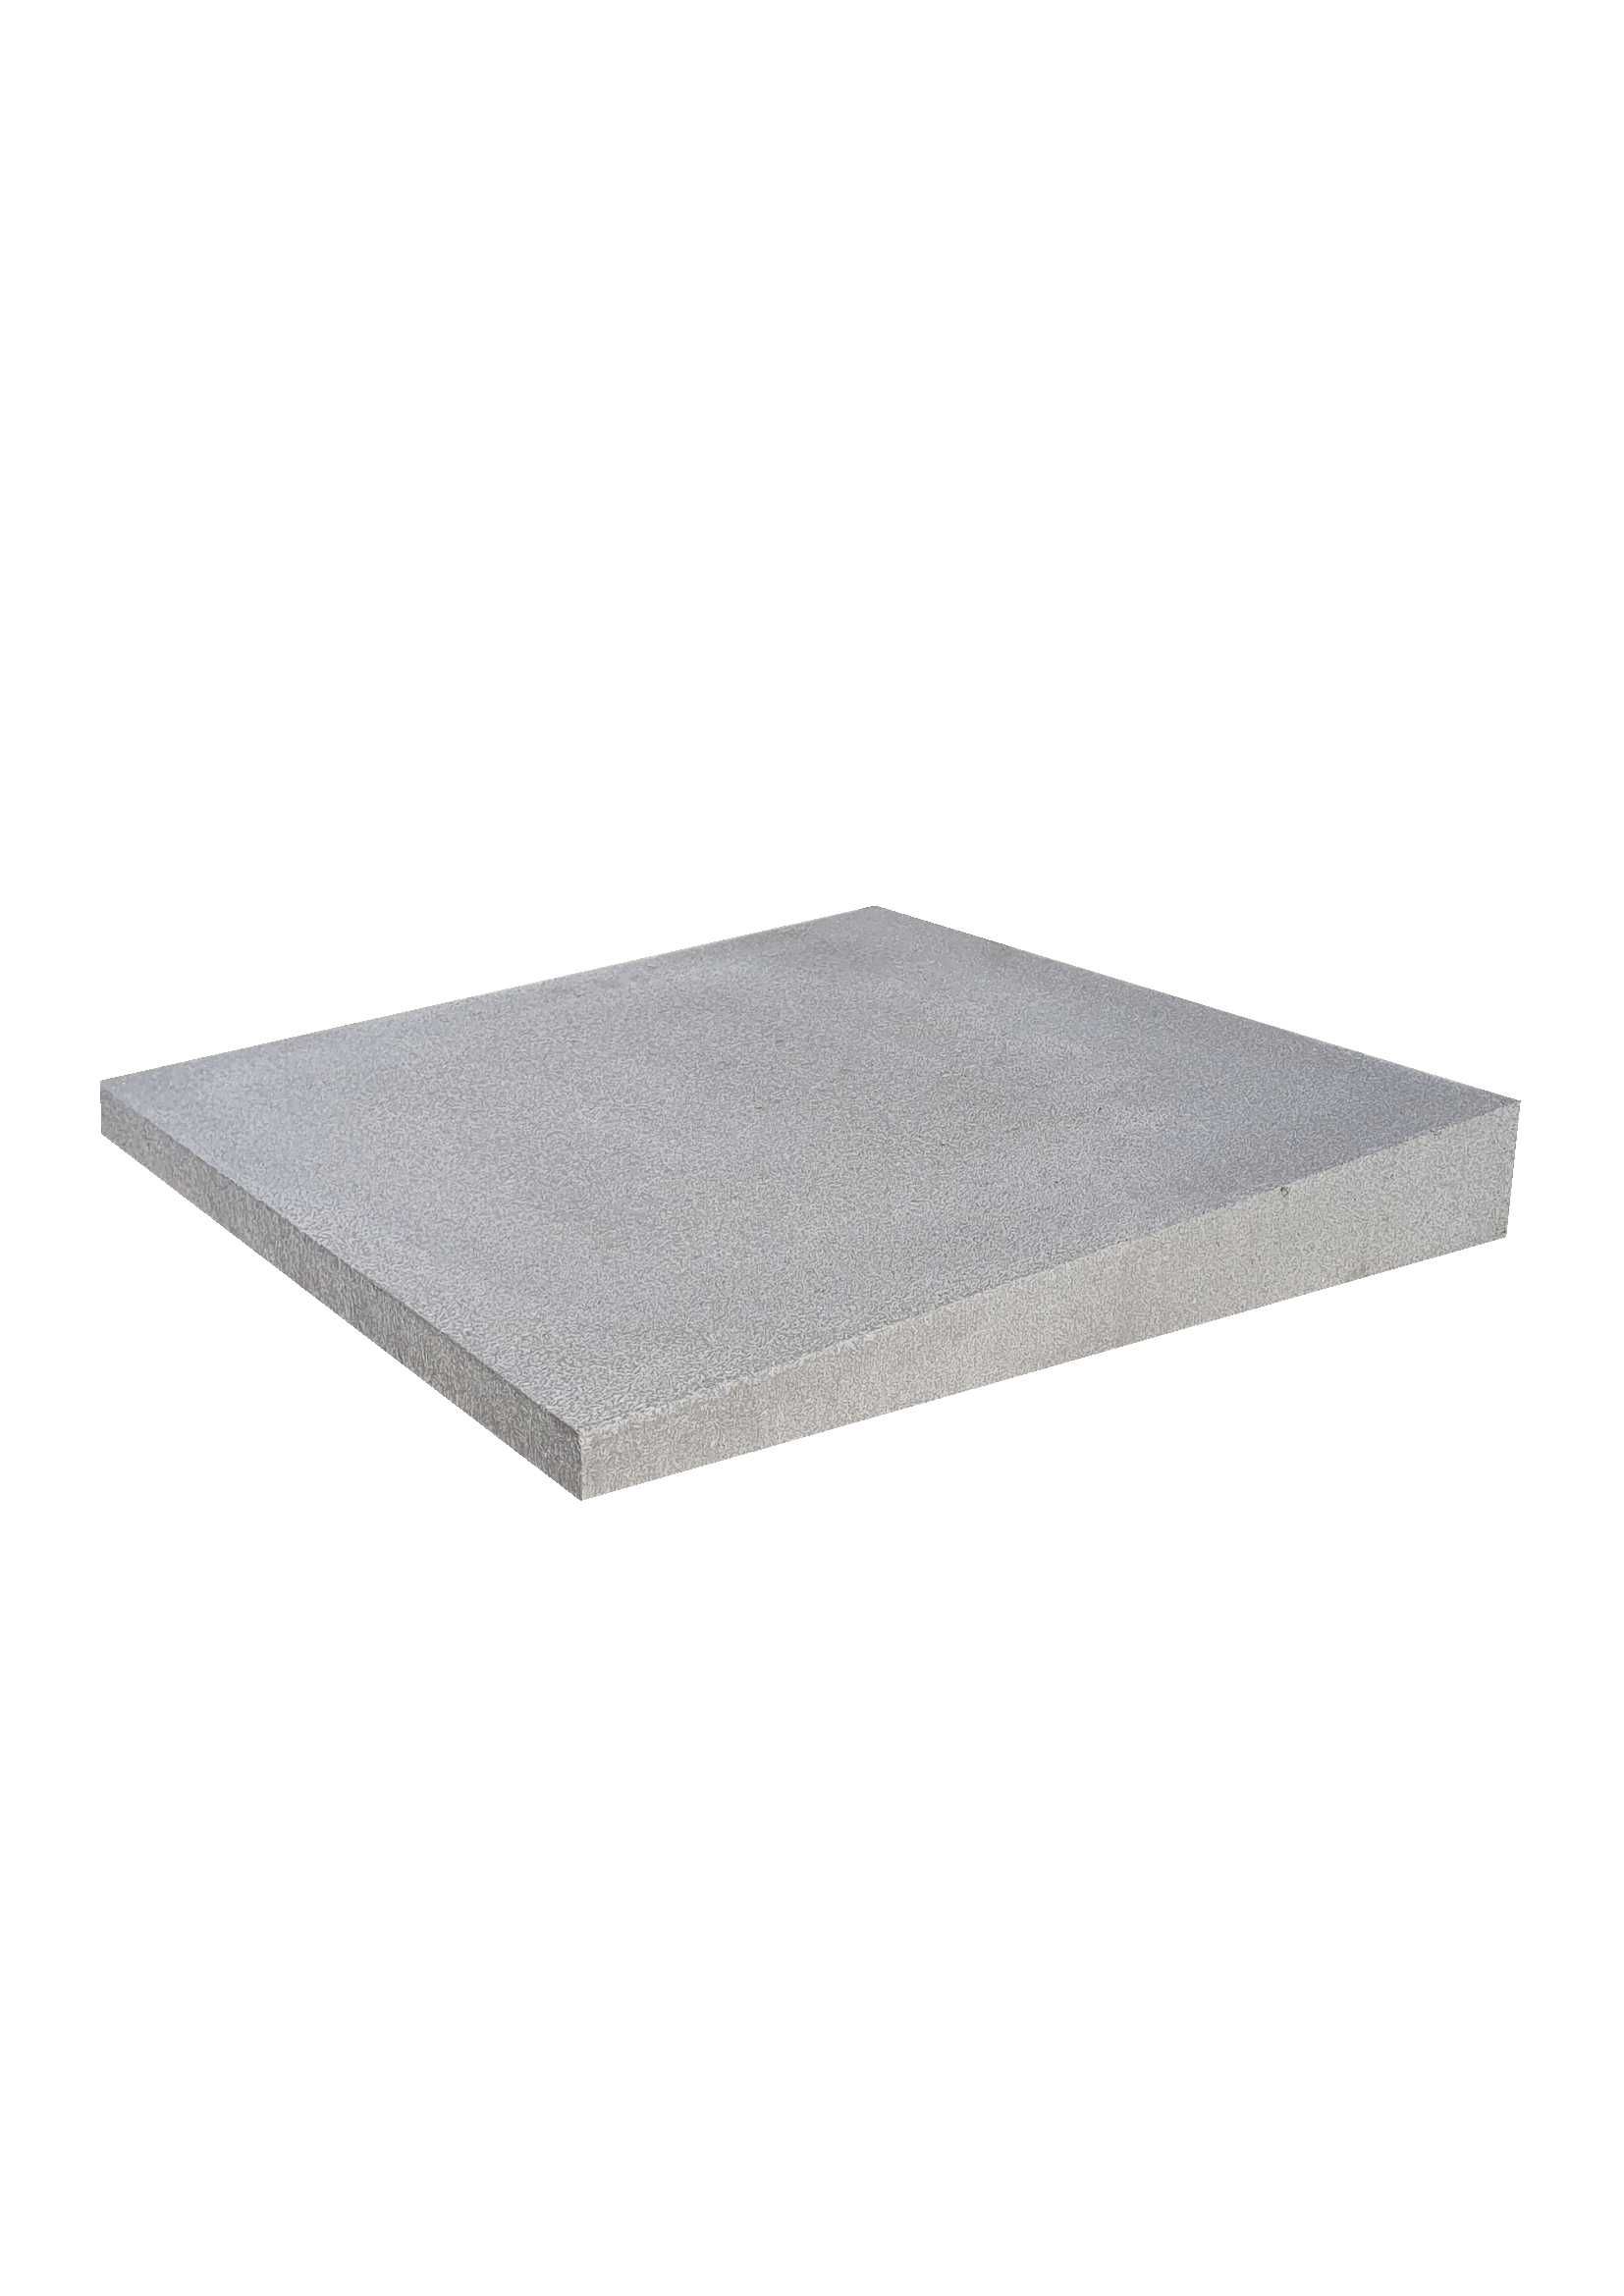 Daszek betonowy  44x44  dwuspadowy kopertowy  lub jednospadowy płaski